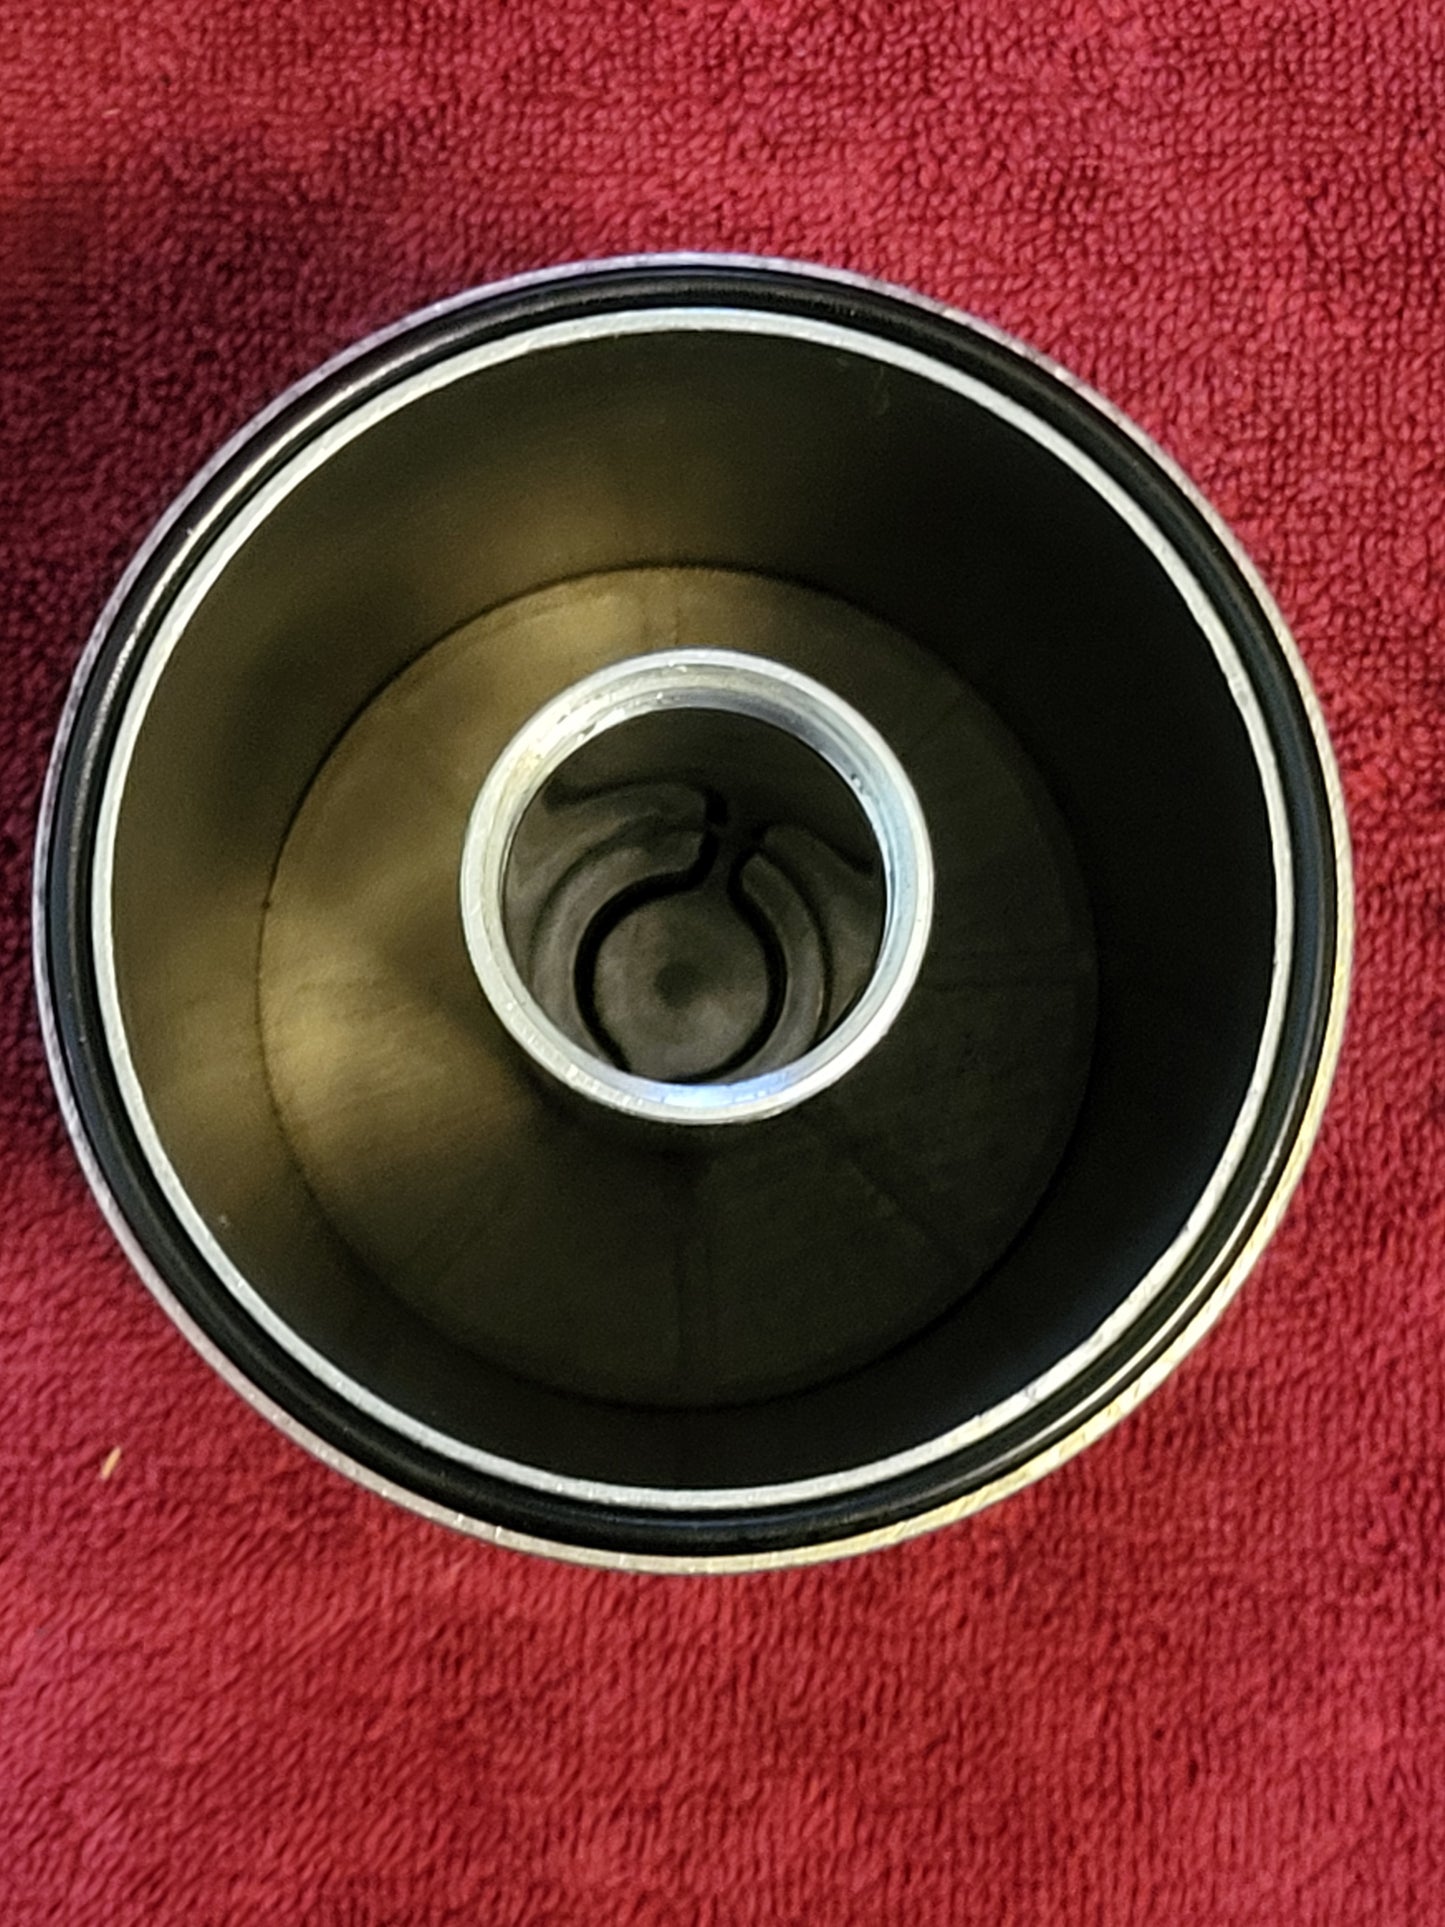 Vintage STILKO Lifetime TP Finned Aluminum Spin-On Oil Filter Original 2